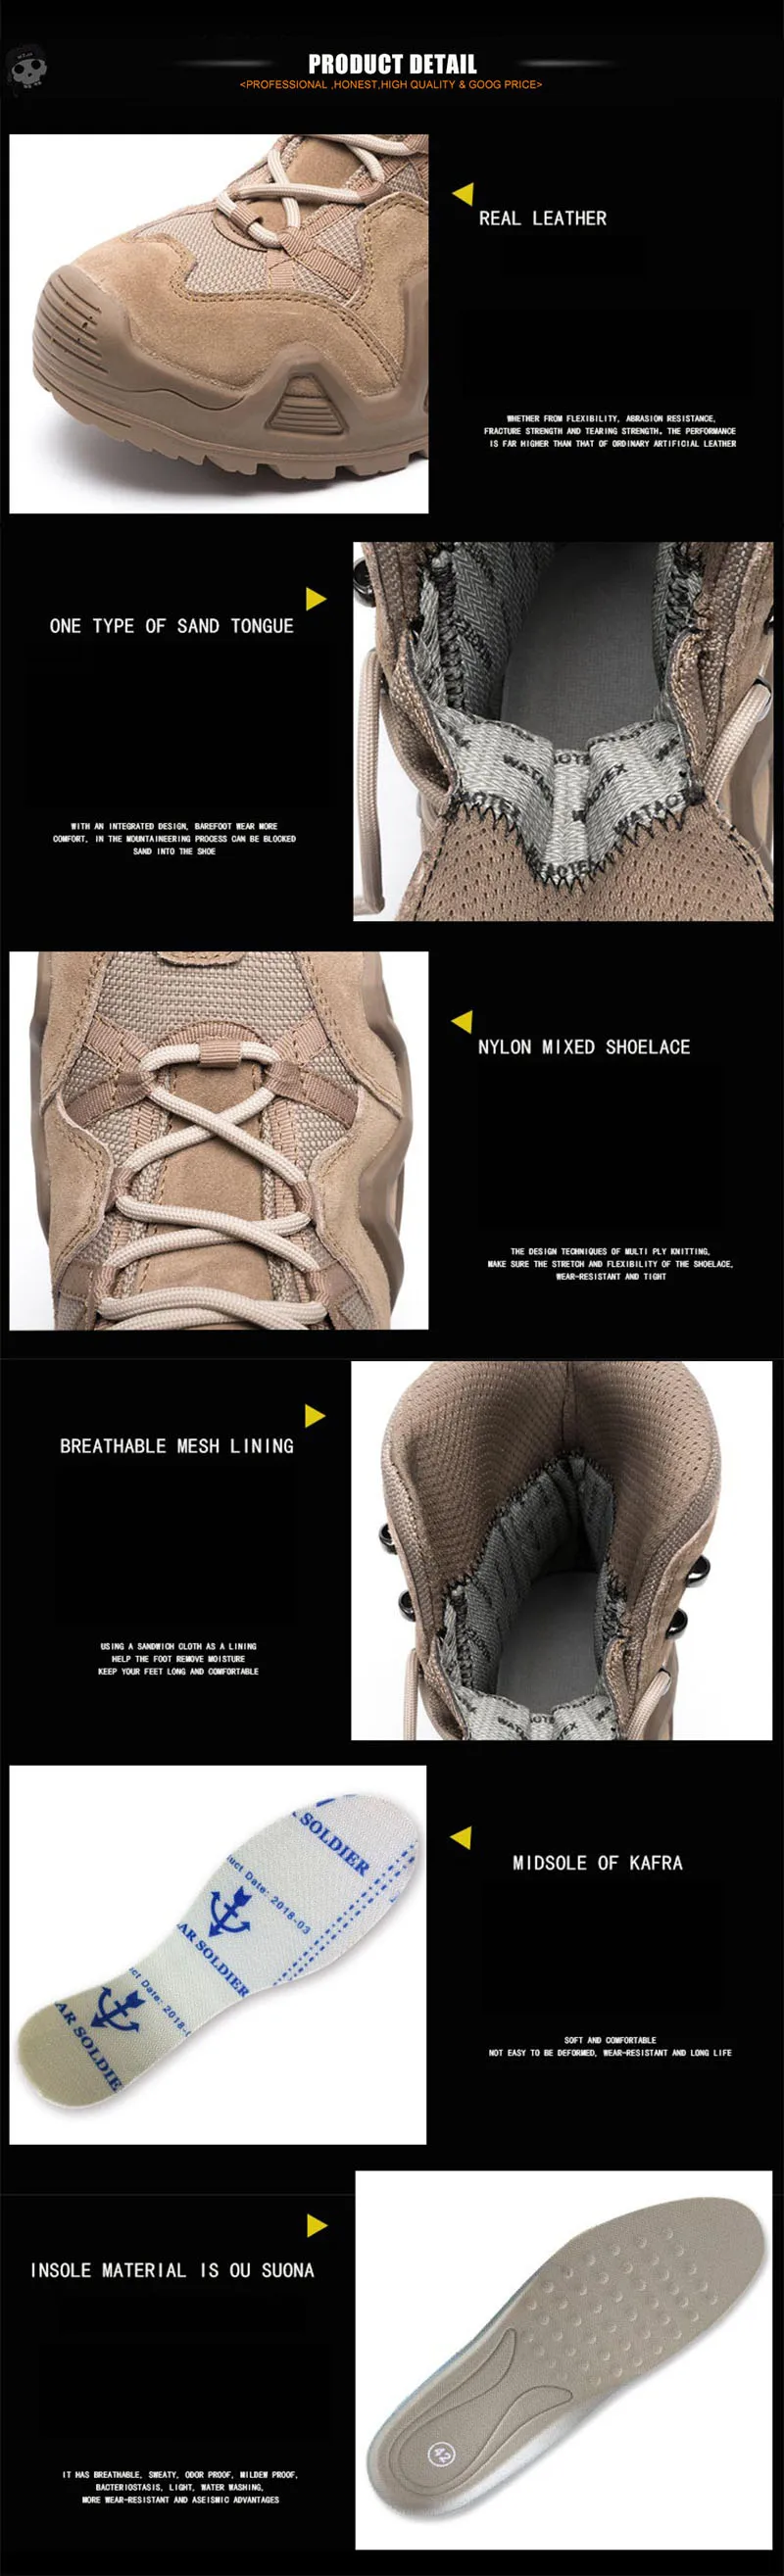 WZJP уличные спортивные тактические горные альпинистские ботинки мужские износостойкие ботинки Нескользящие походные и треккинговые ботинки для пеших прогулок